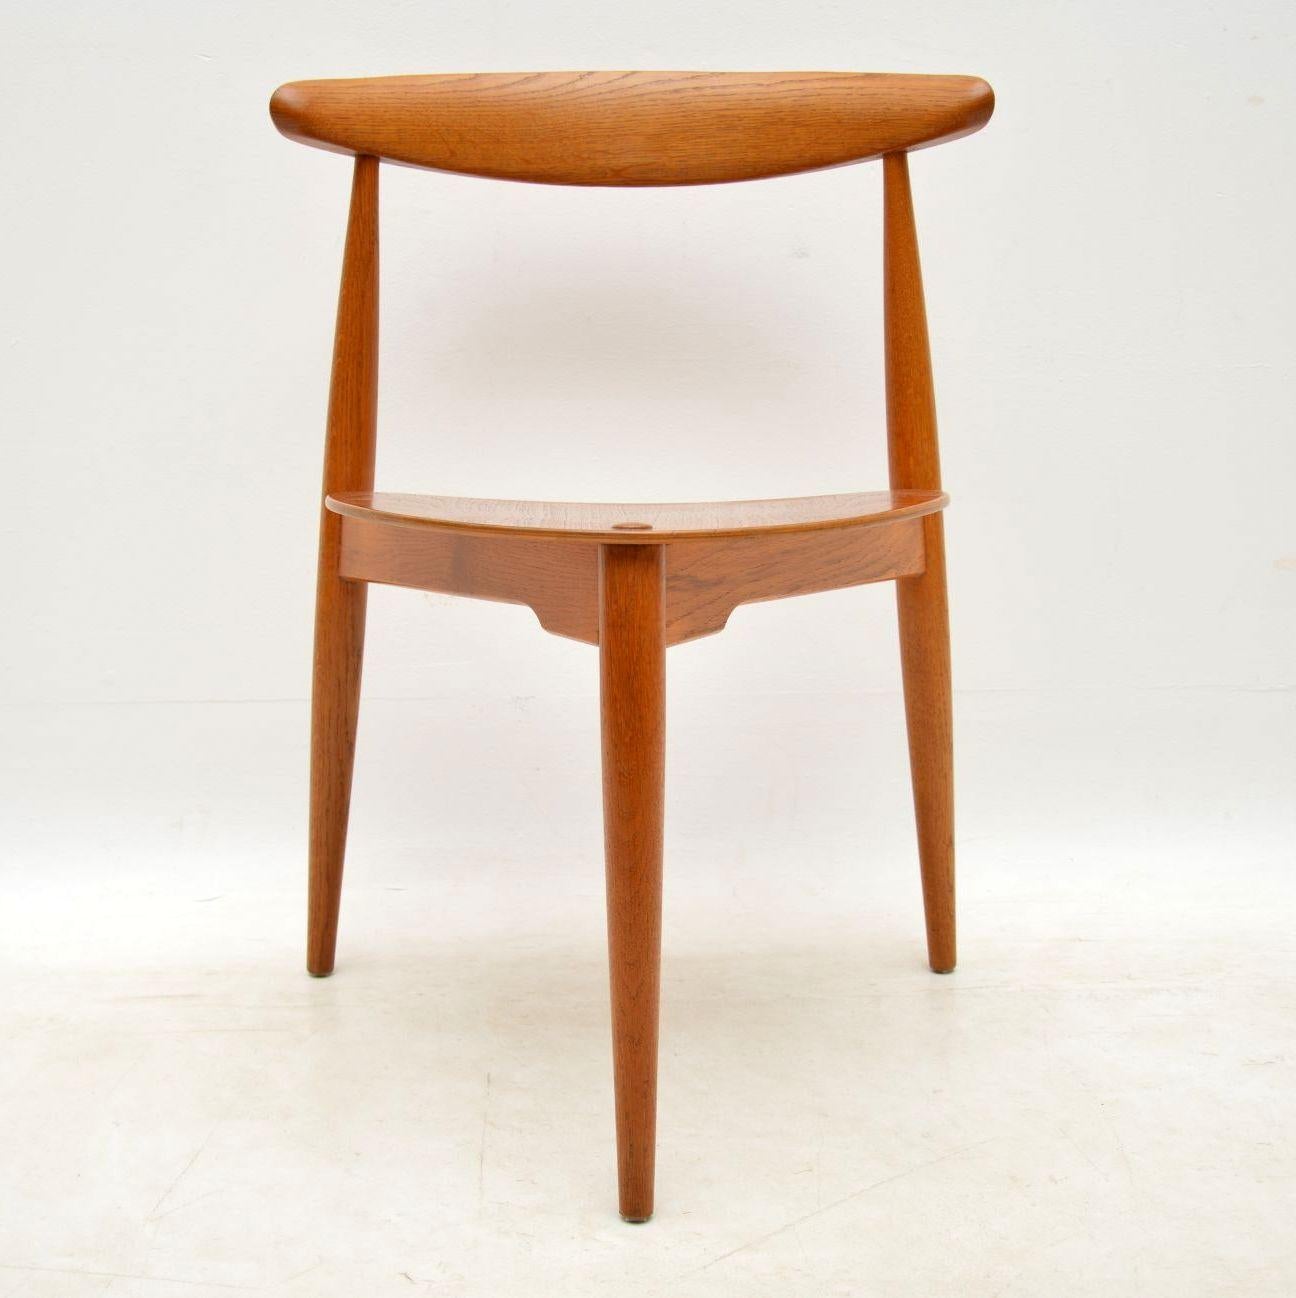 1950s Danish Teak & Oak Dining Table & Chairs by Hans Wegner for Fritz Hansen 2